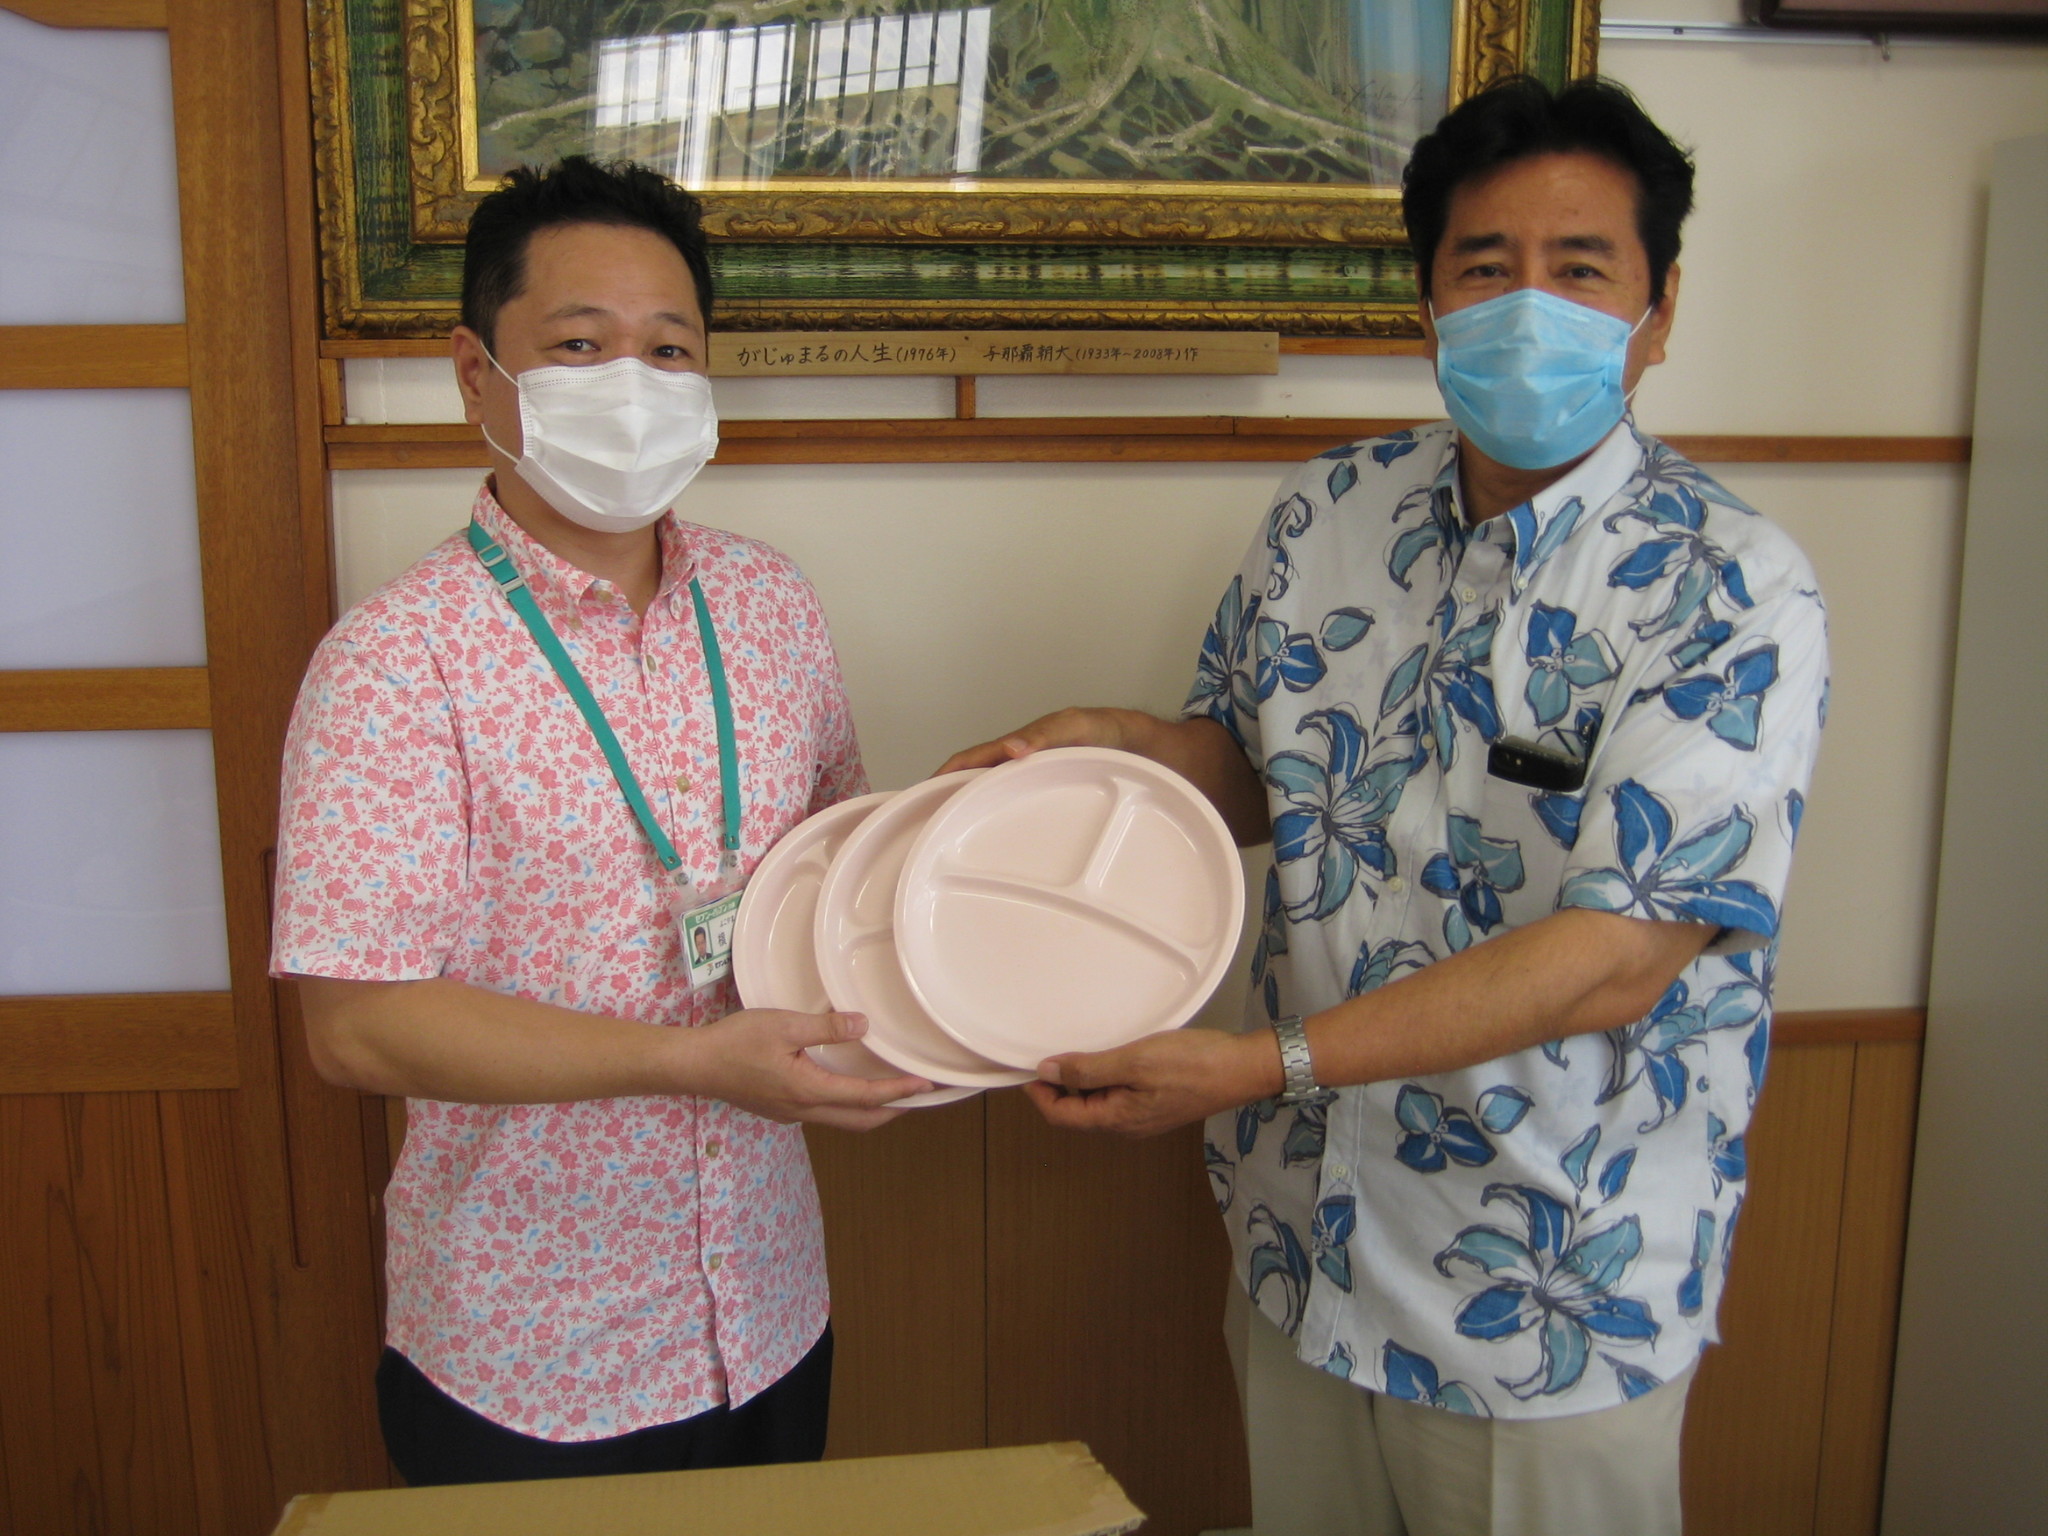 セブン イレブン 沖縄で使用されたbio Limex Bagをアップサイクル 再製品化した Limexランチプレート を児童養護施設の寄贈品として提供 Tbmのプレスリリース